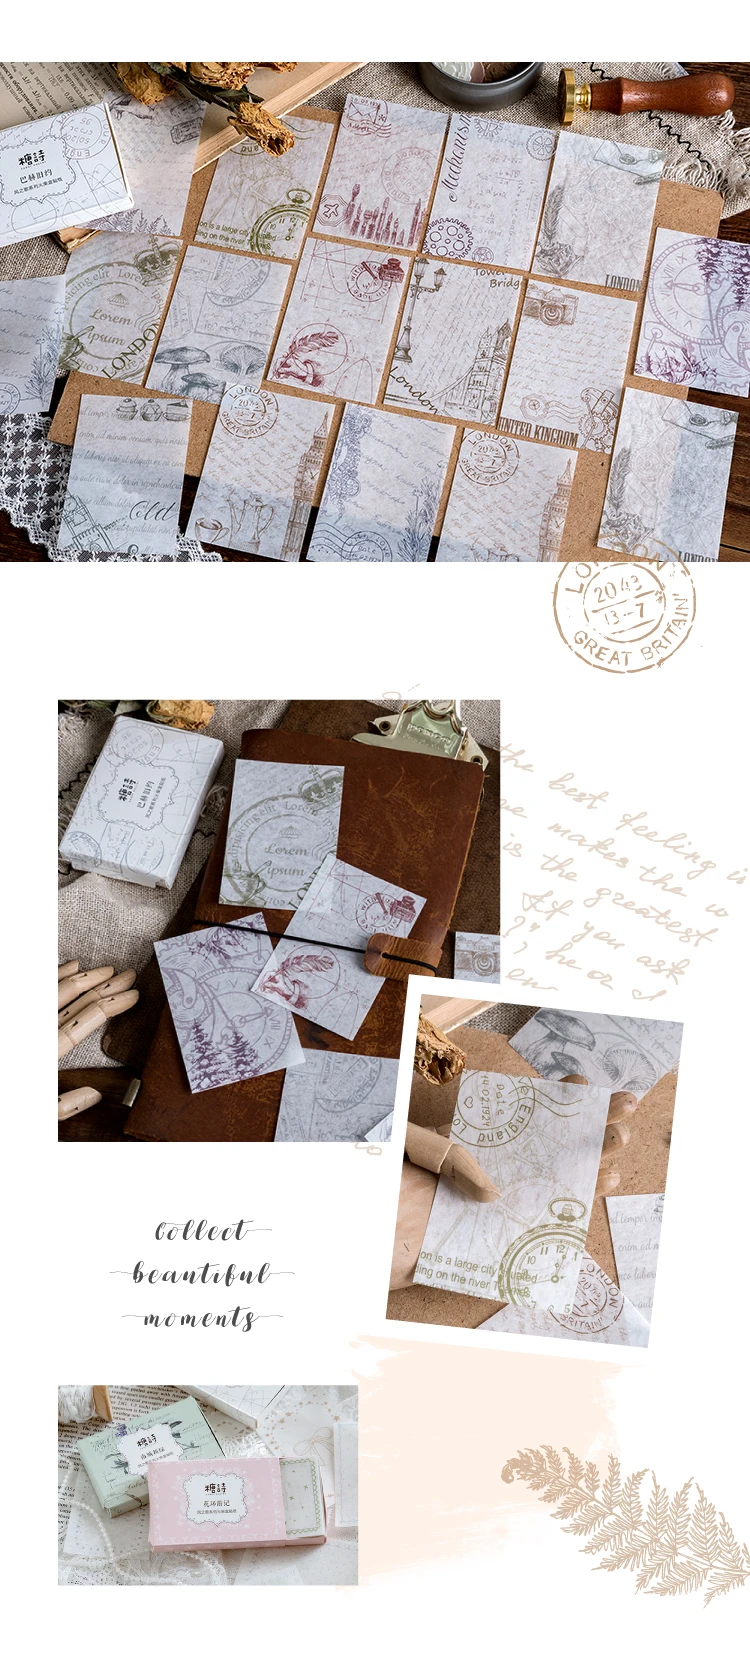 Серия Song of the wind Journal Matchbox декоративная наклейка s Скрапбукинг палочка этикетка дневник канцелярские принадлежности для альбома Ретро штамп наклейка